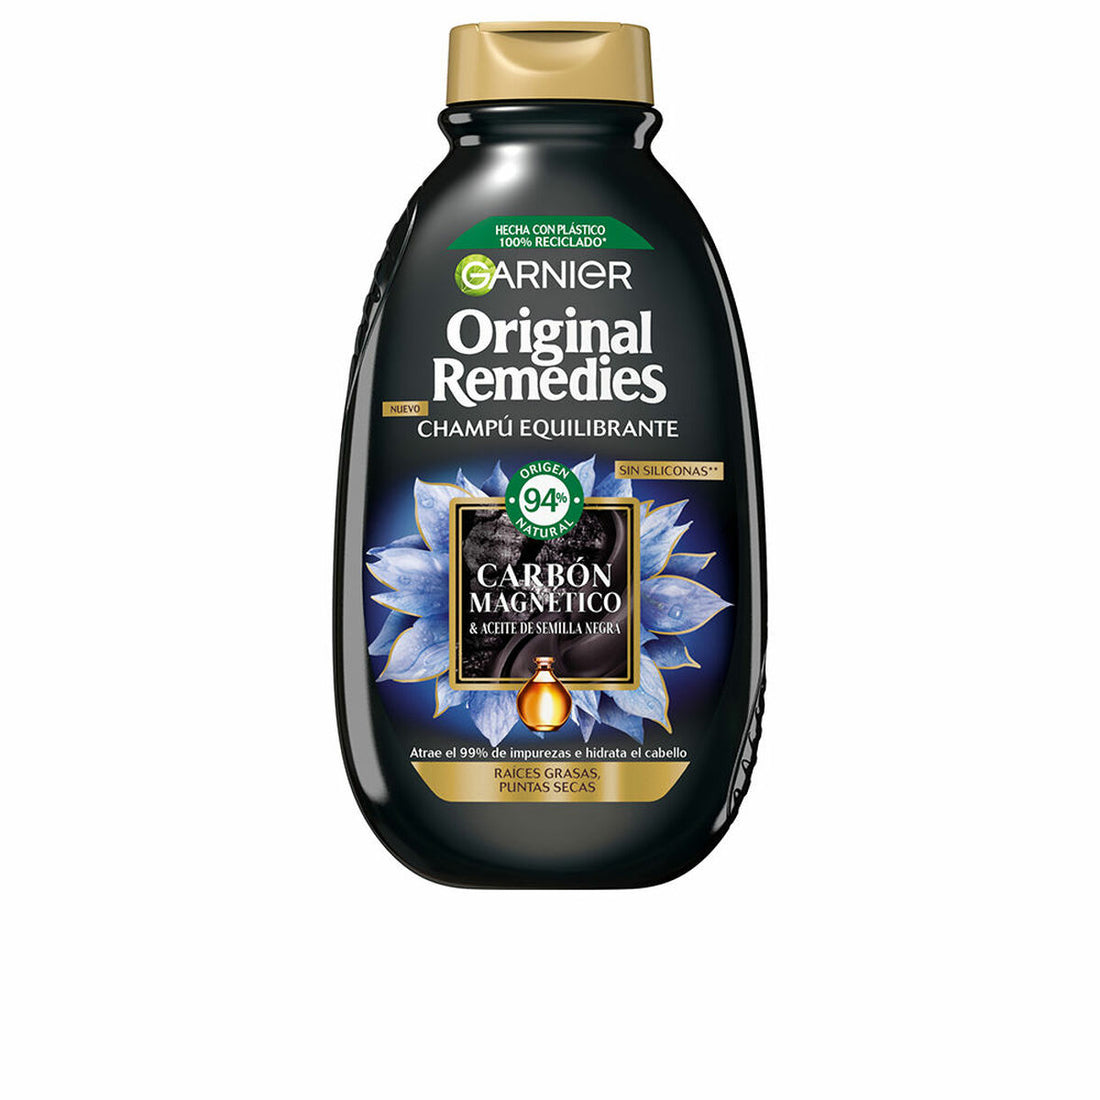 Shampoo Garnier Original Remedies Ausgleichende Magnetischer Kohlenstoff (250 ml)